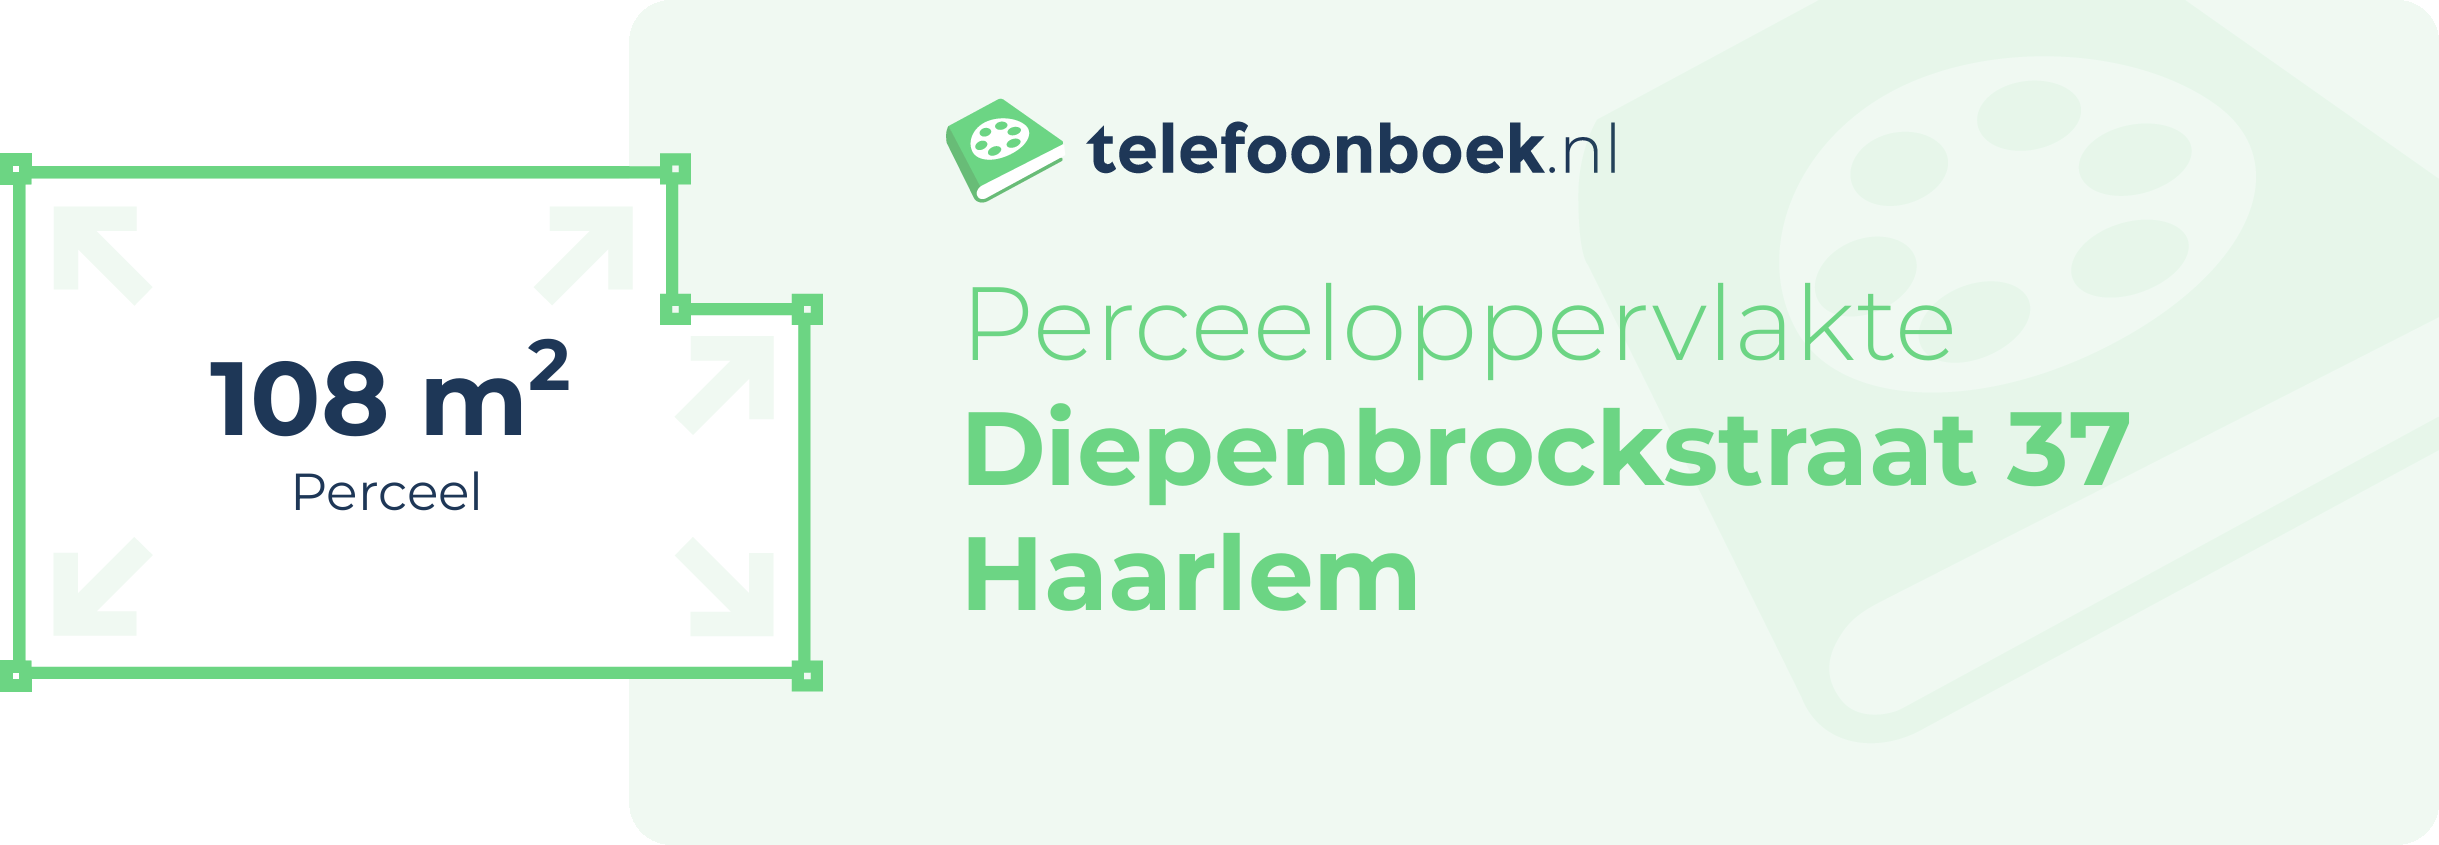 Perceeloppervlakte Diepenbrockstraat 37 Haarlem